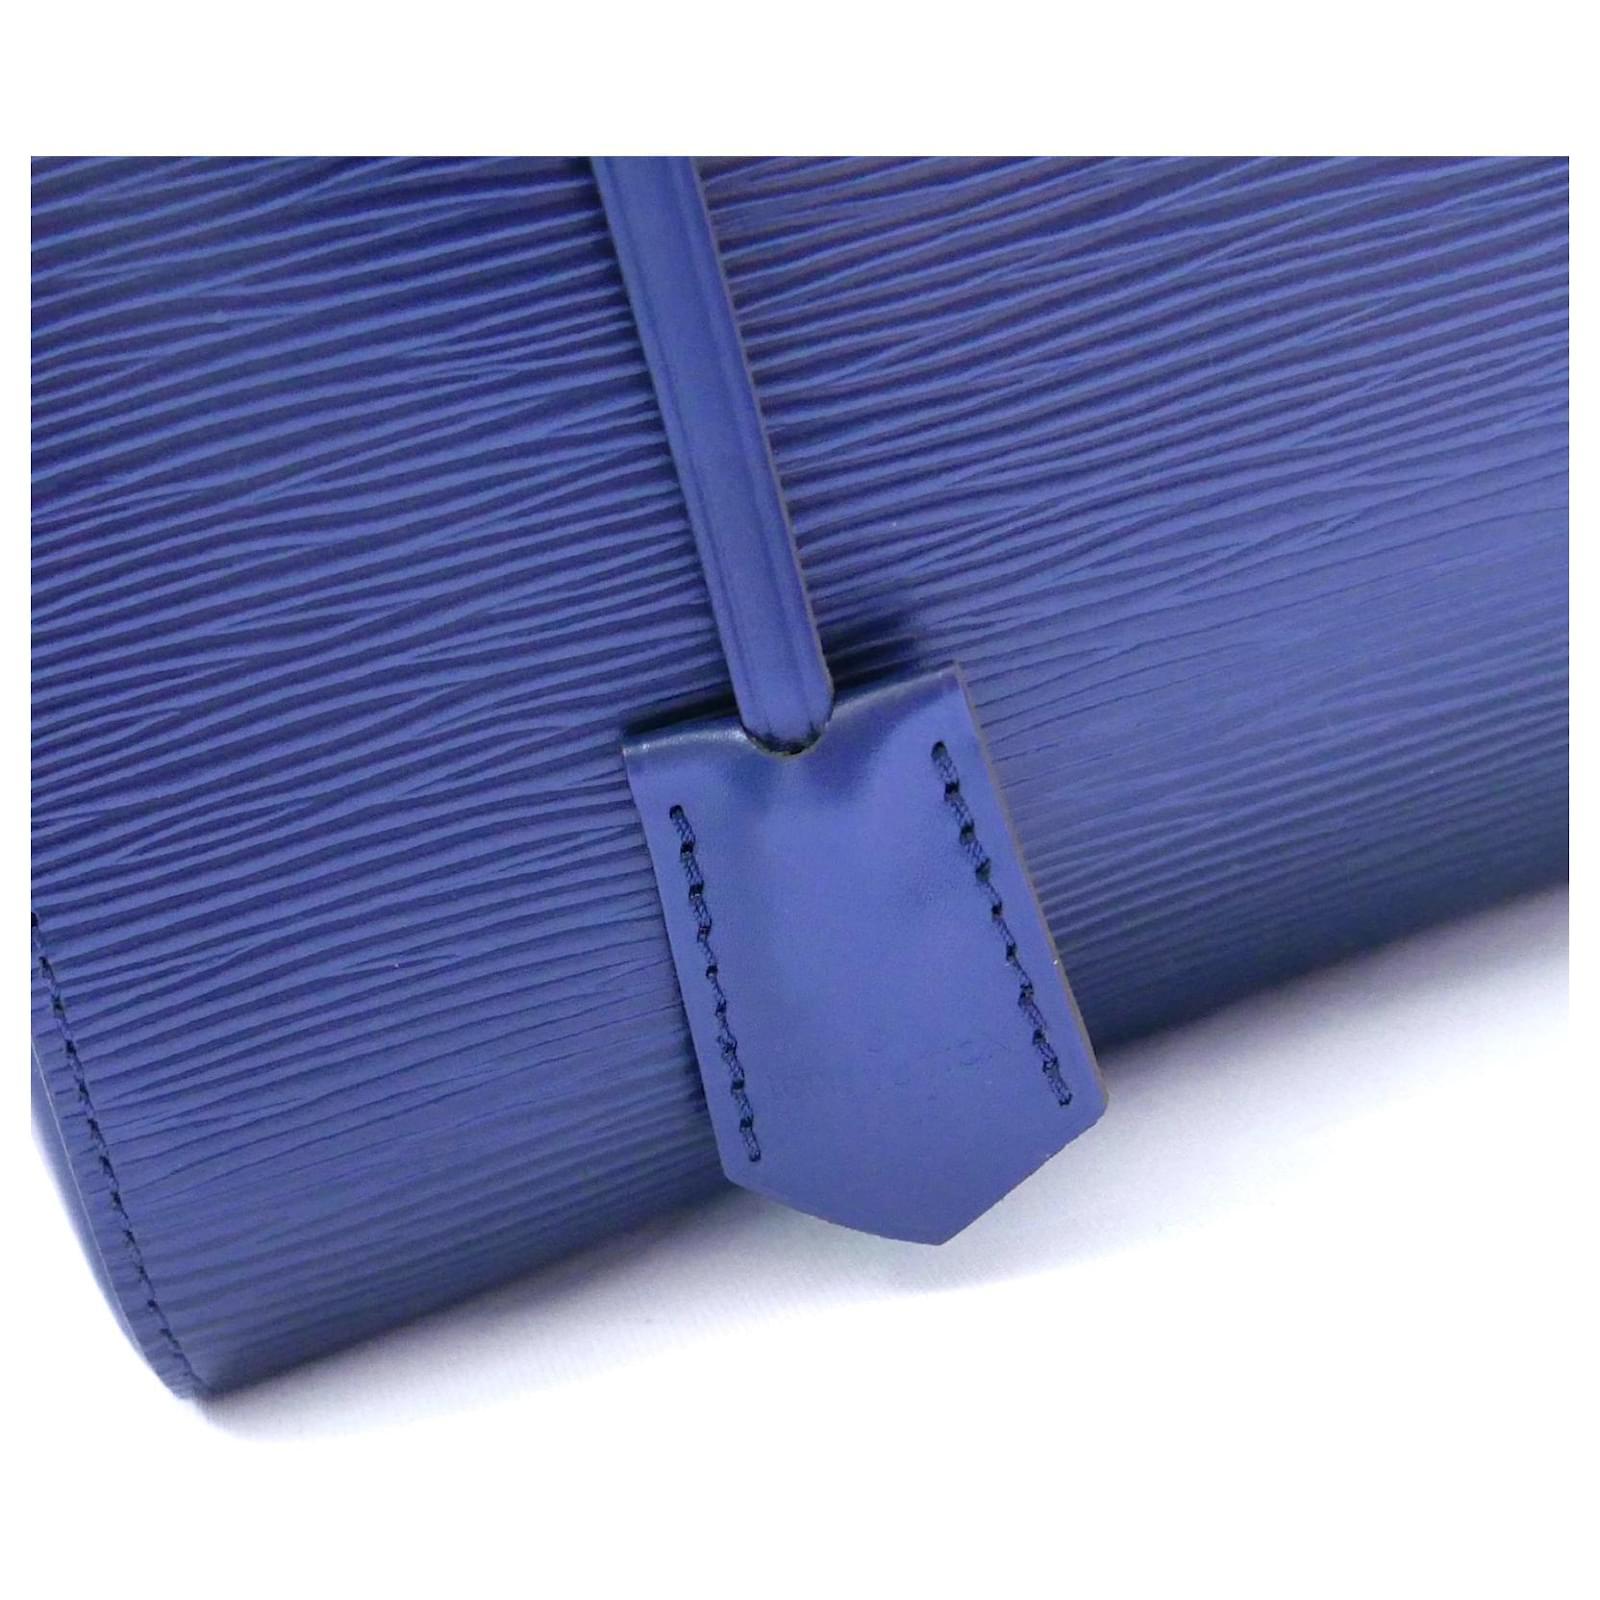 Wunderschöne Louis Vuitton Cluny BB Handtasche aus kultigem navyfarbenem Epi-Leder. Einmal benutzt und mit Staubbeutel und Pflegeanleitung geliefert. Sie hat eine superschicke, strukturierte Form mit oberem Henkel und optionalem Schulterriemen. Mit